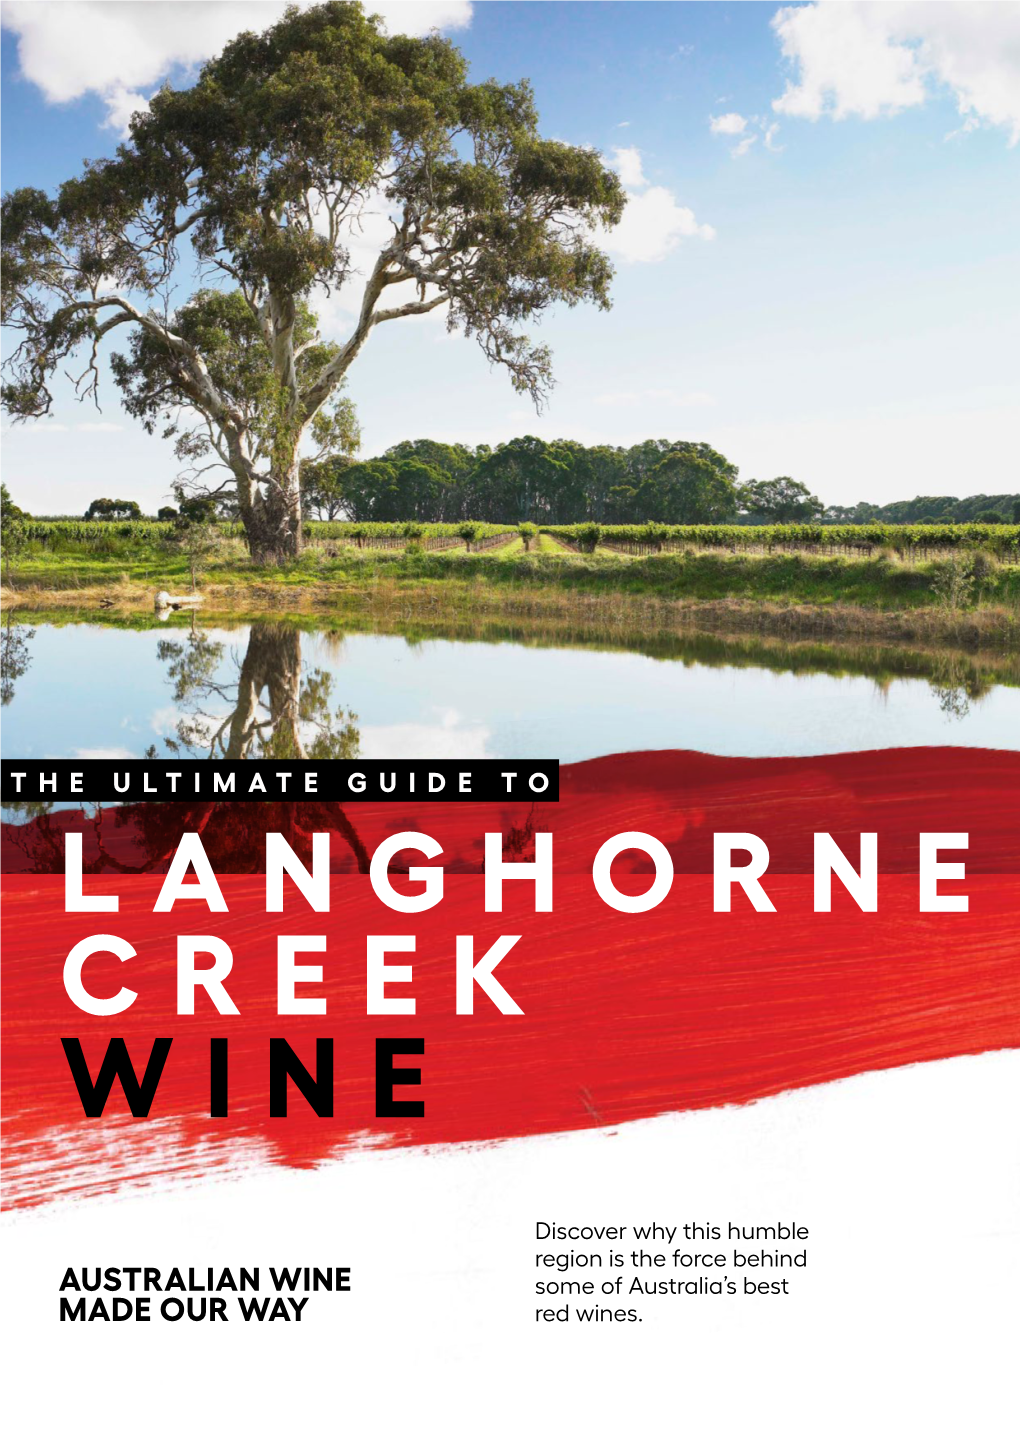 Langhorne Creek Wine